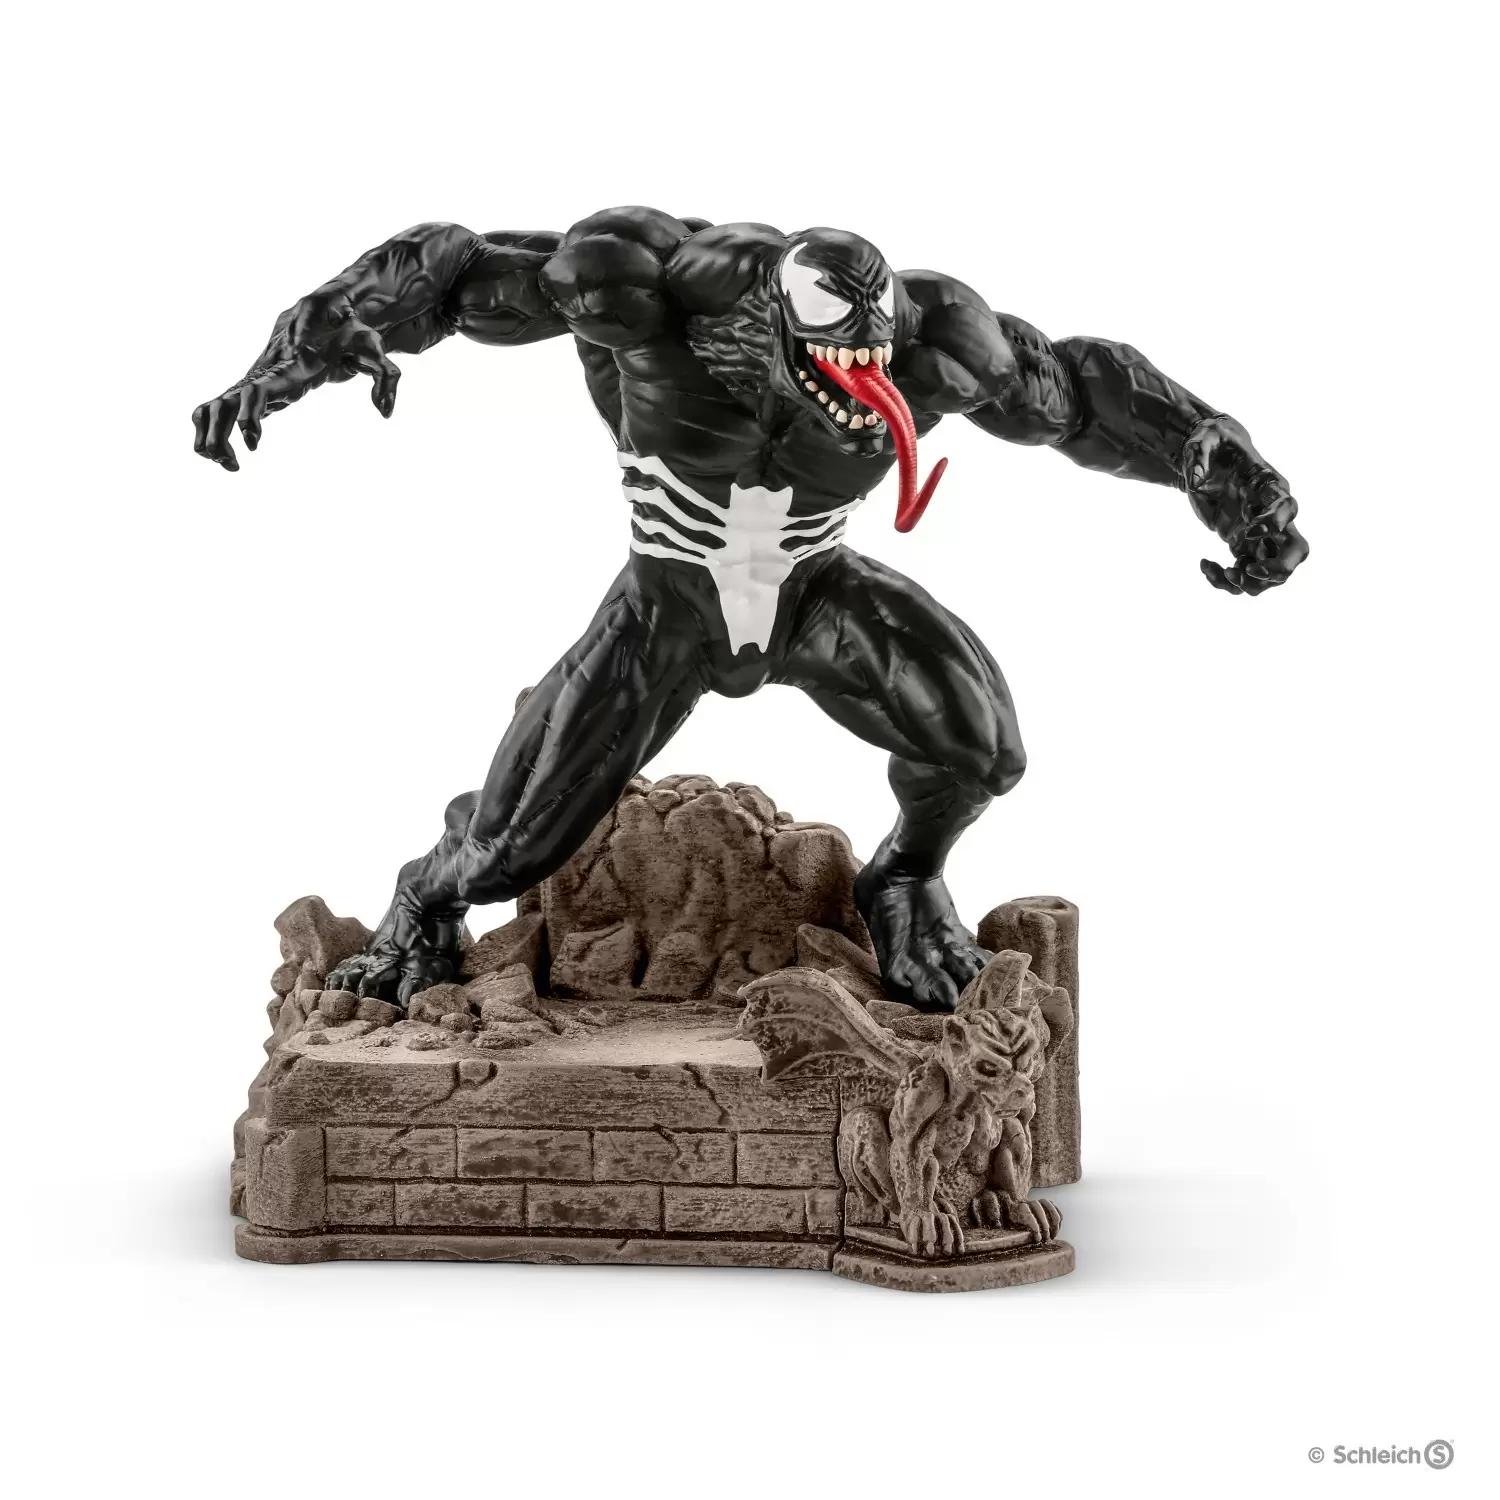 Marvel - Venom